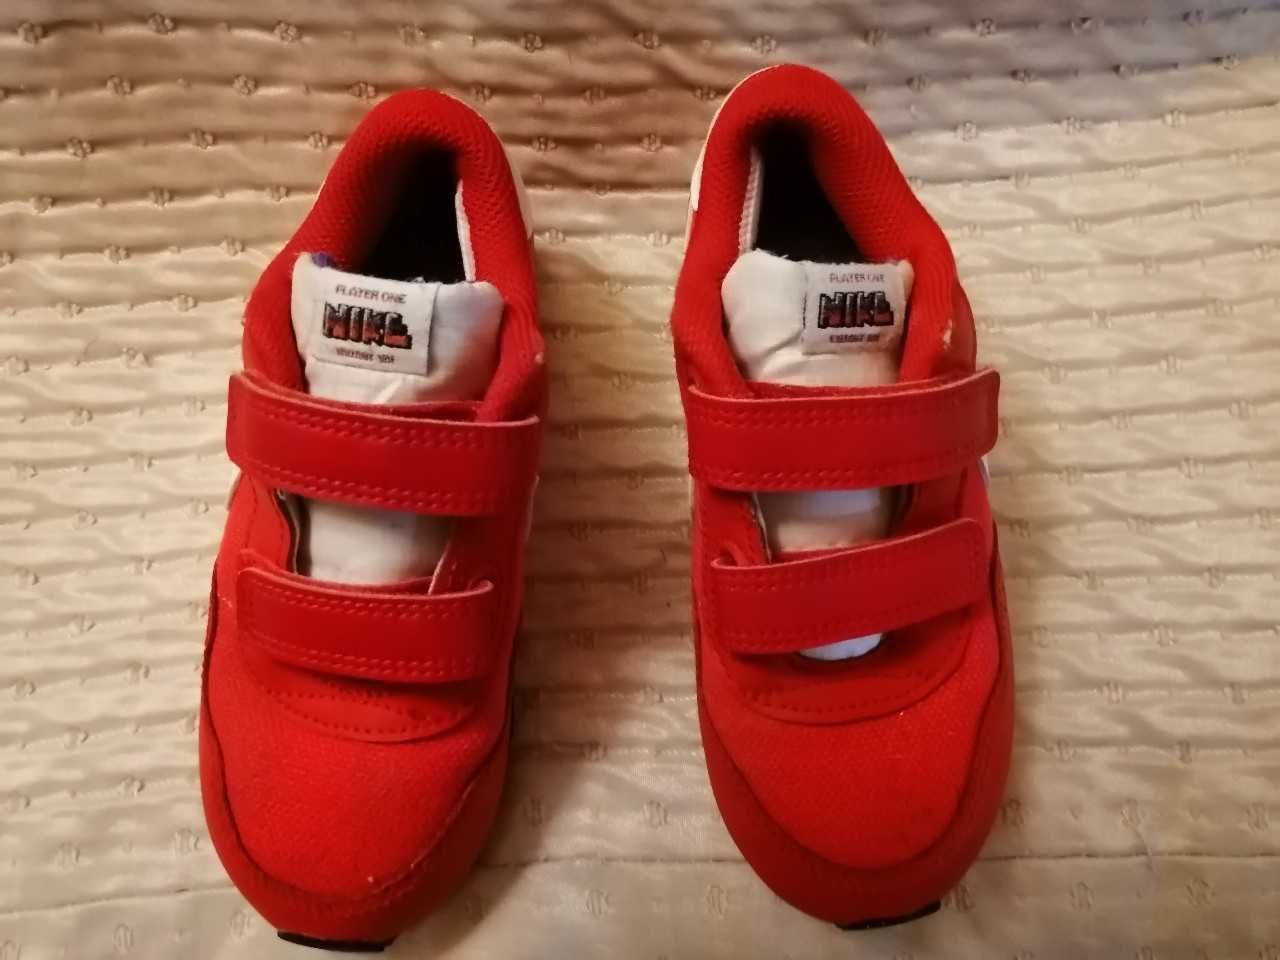 Nike Red Player One buciki rozm. 27 cm wew. 16 cm rzepy czerwone